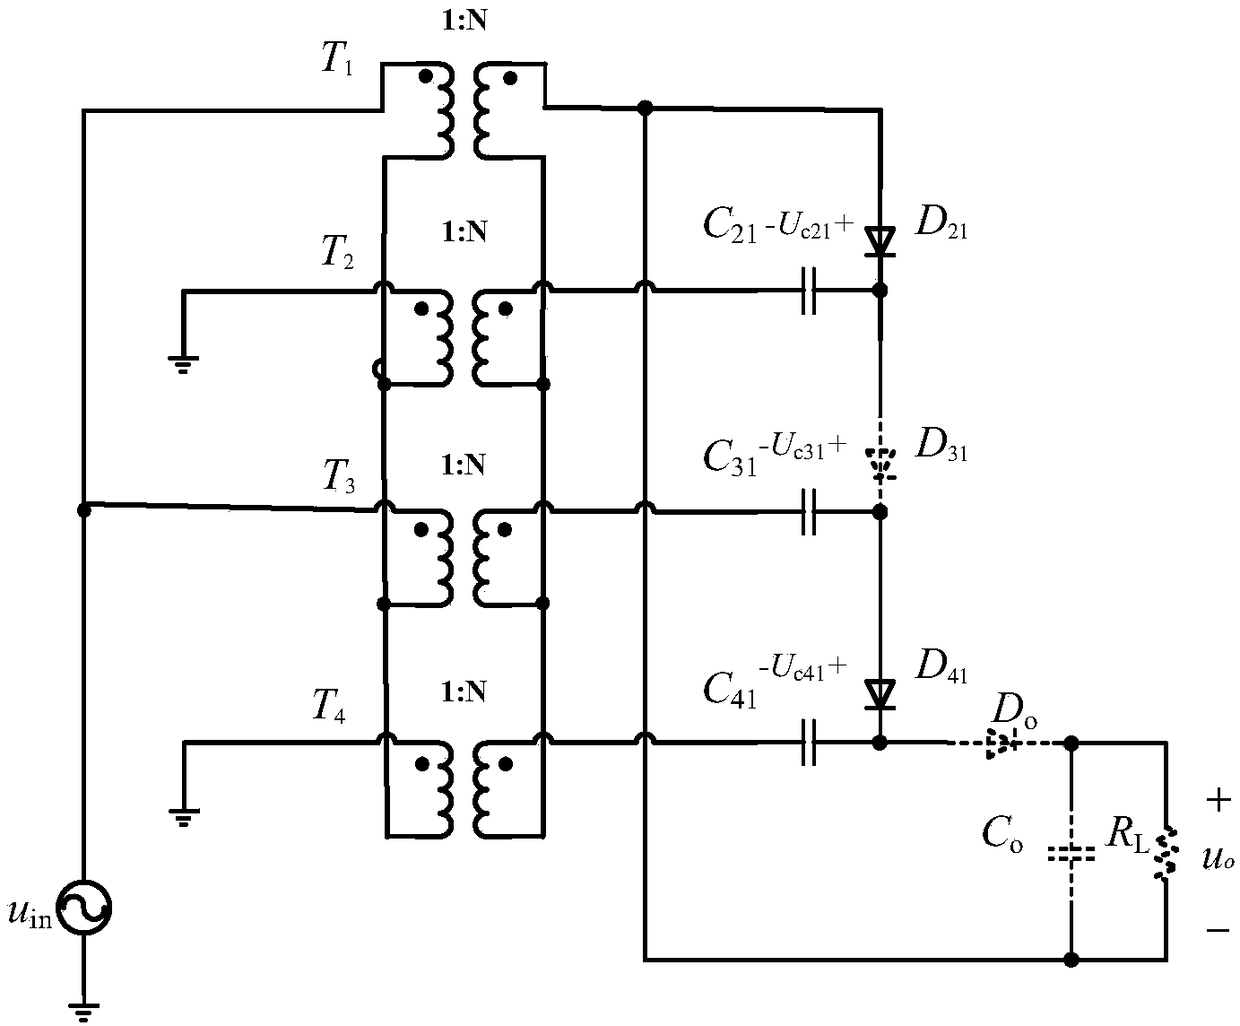 Large-capacity isolated DC/DC converter based on multi-phase three-level inverter